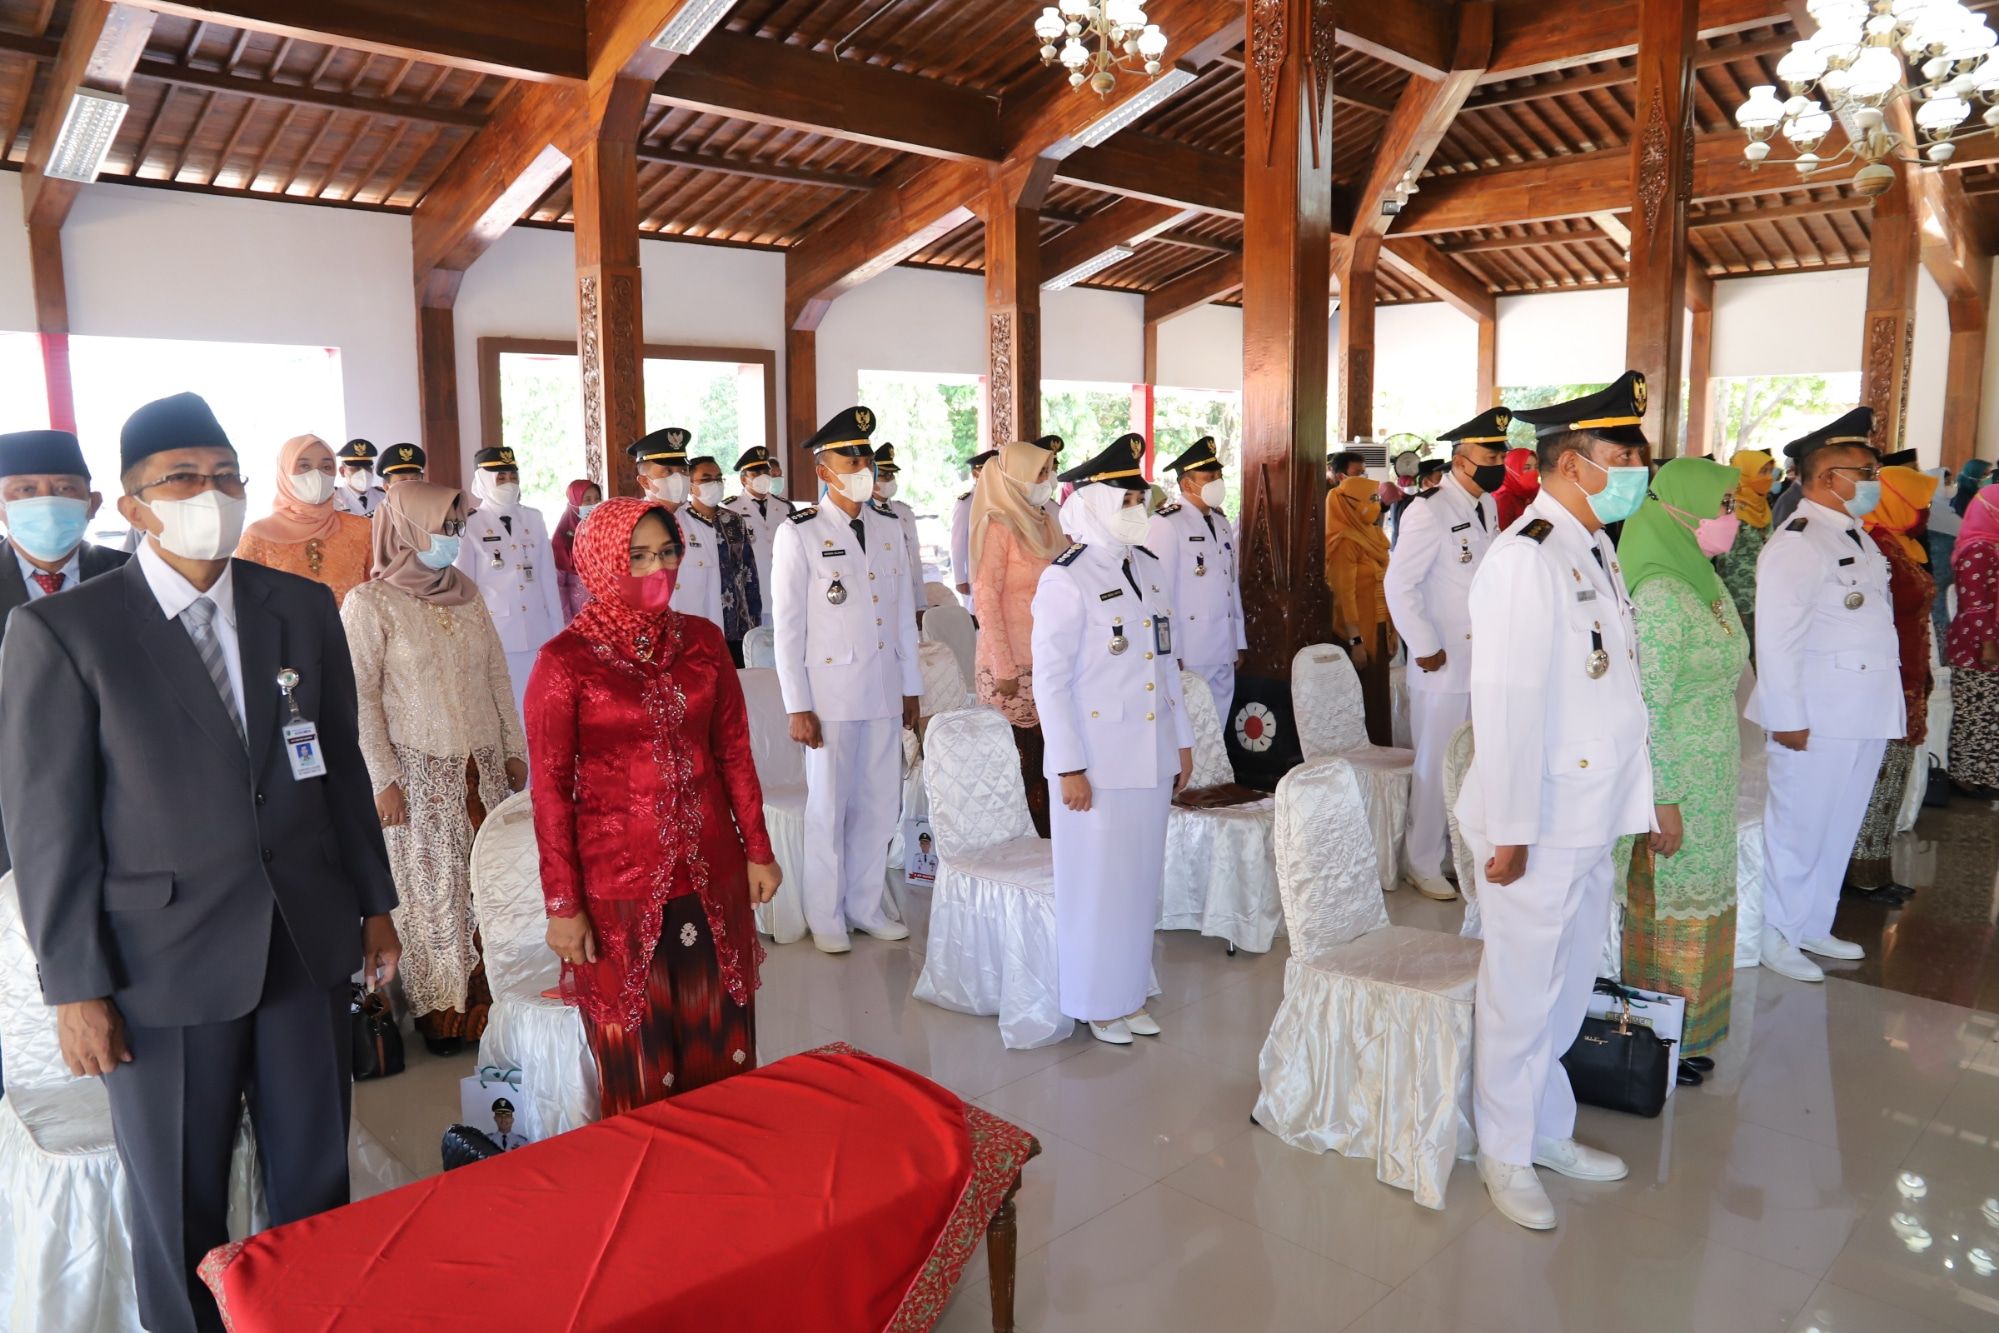  Bupati Kebumen Arif Sugiyanto melantik 30 orang Pejabat Administrator dilingkup pemerintahan daerah.